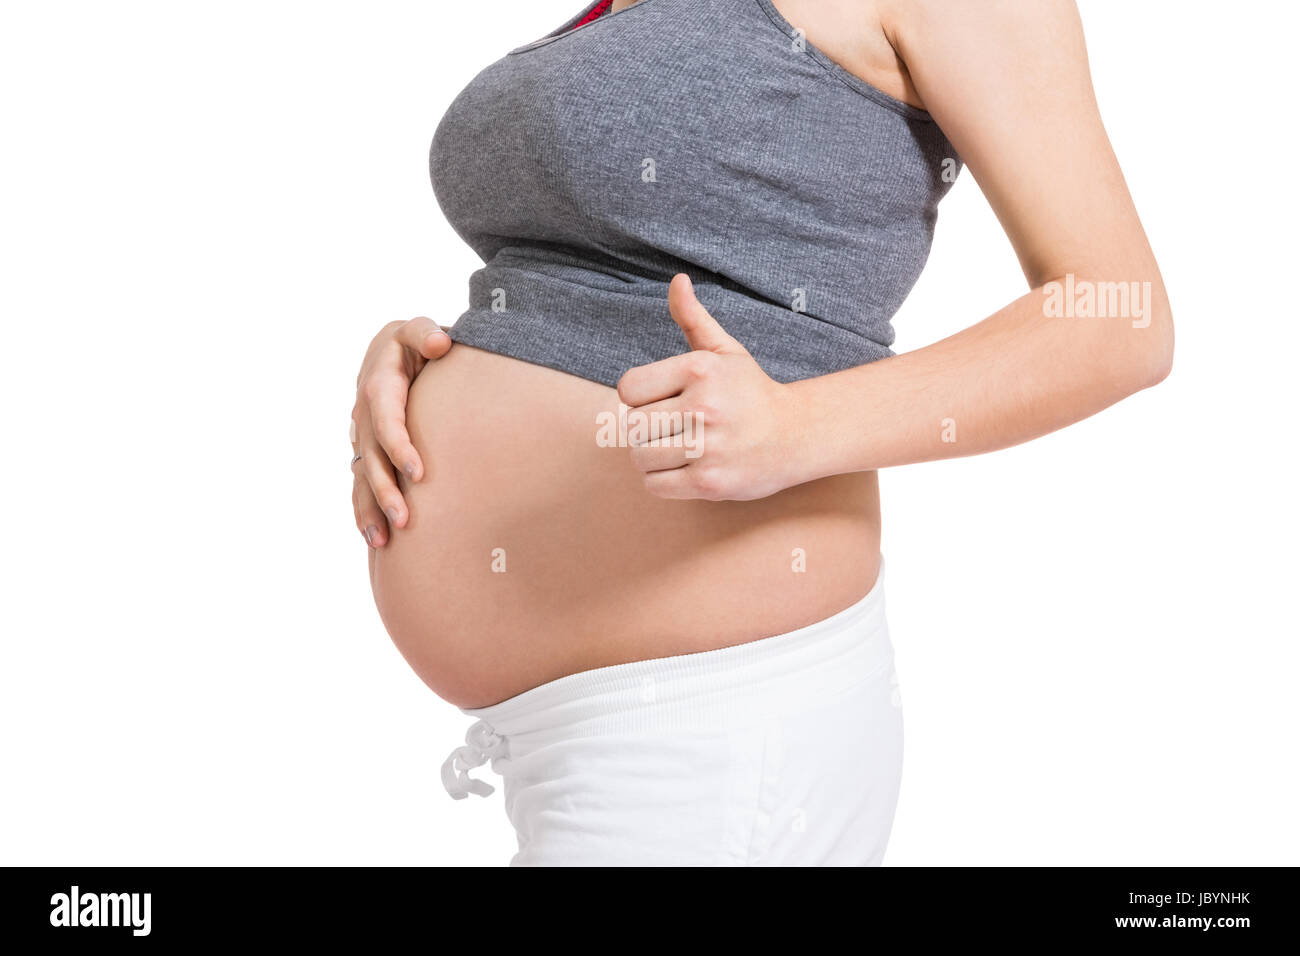 Junge frau mit Babybauch in erwartungsvoller Haltung als Nahaufnahme isoliert vor weißem Hintergrund Foto Stock